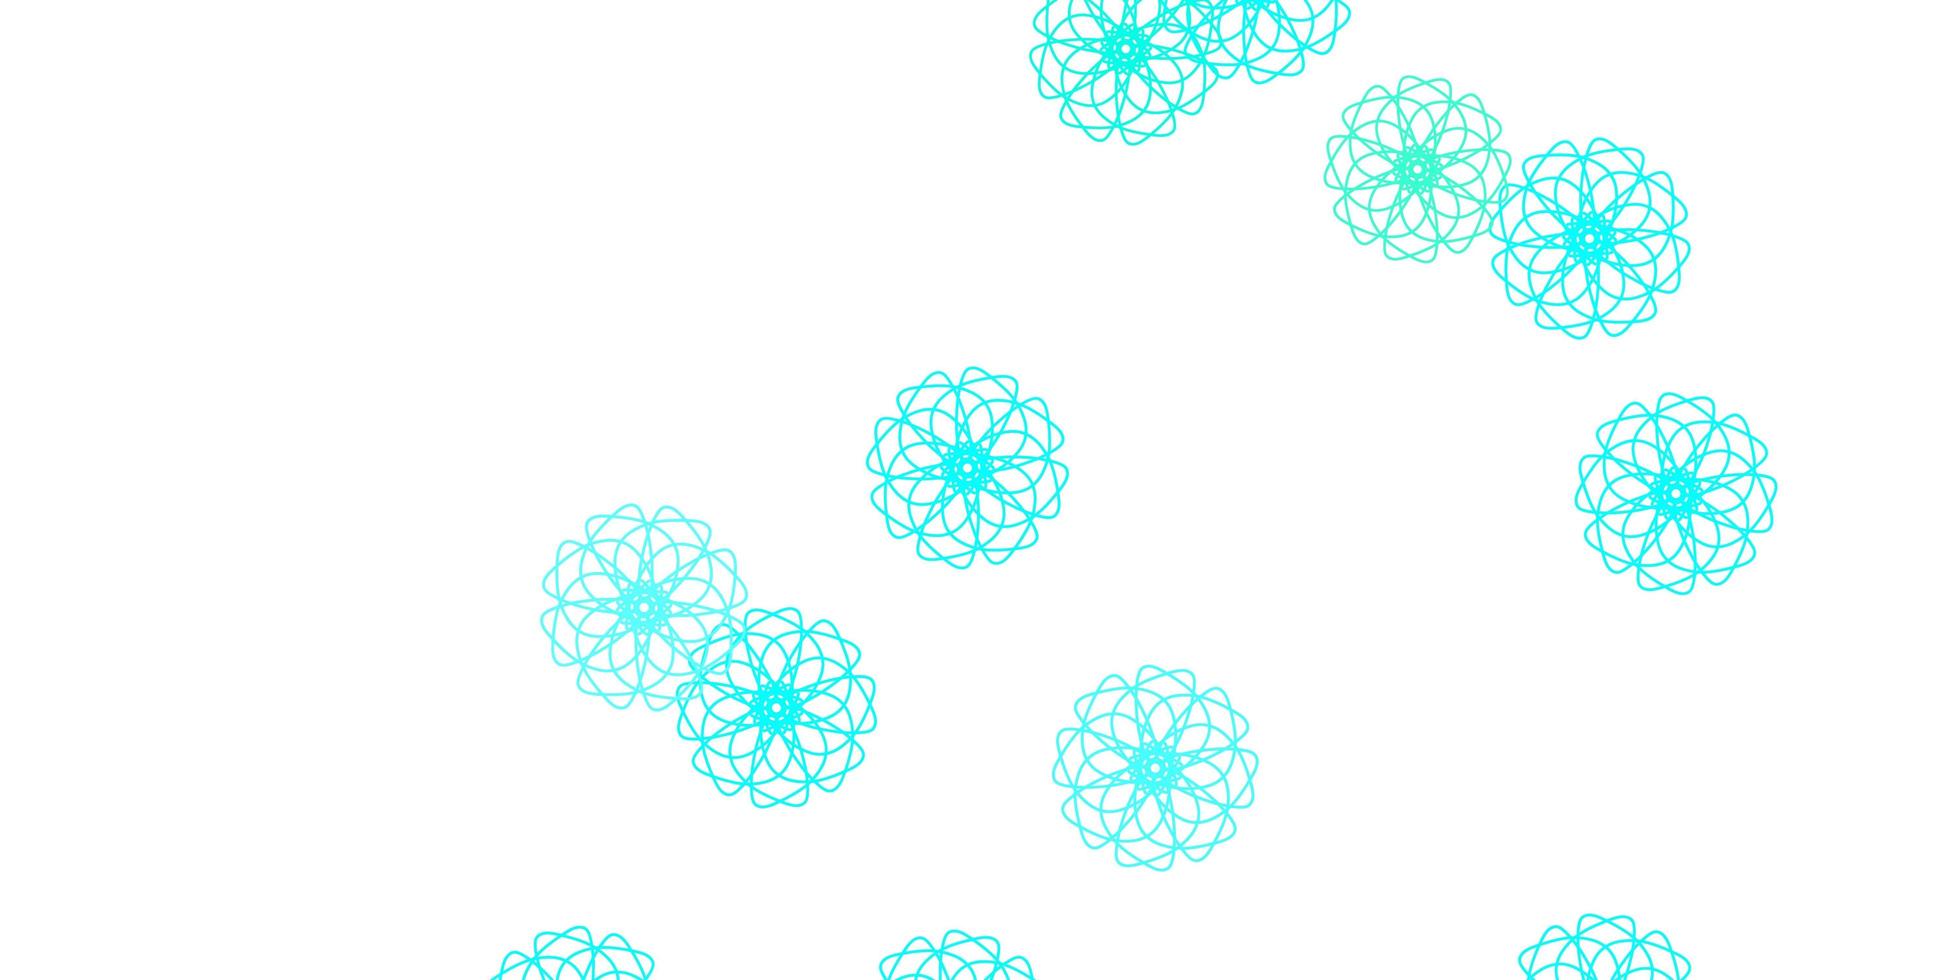 motif de doodle vecteur bleu clair, vert avec des fleurs